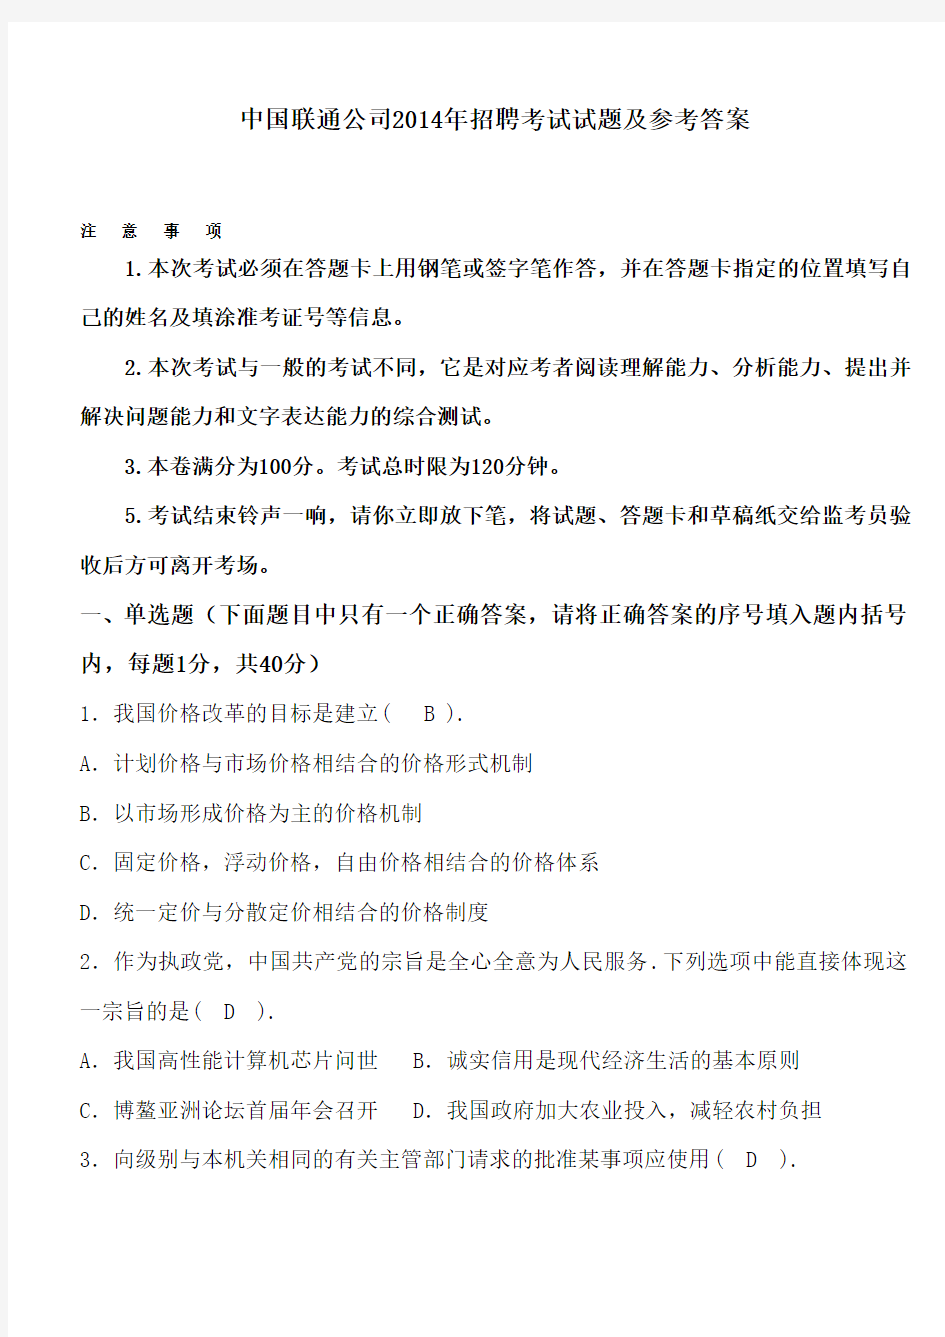 中国联通公司2014年招聘考试试题及参考答案